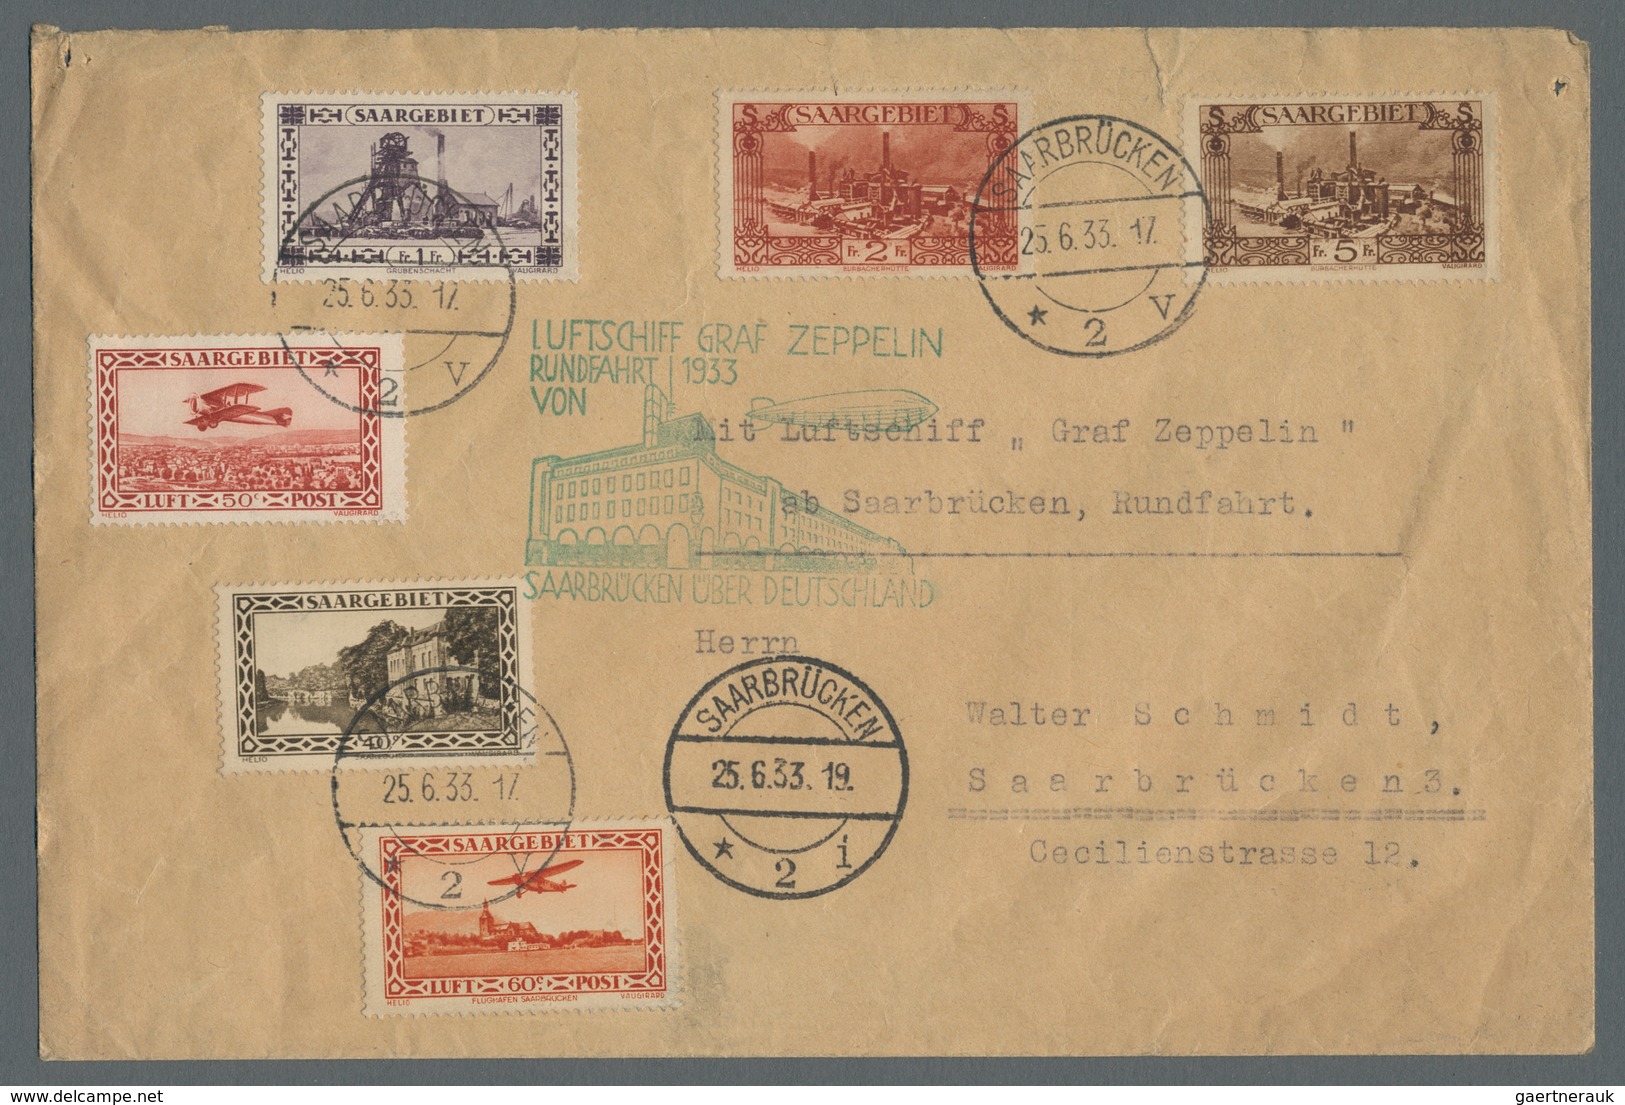 Zeppelinpost Deutschland: 1933 - Saargebietsfahrt, Portorichtig Mit 9,50 Fr. Frankierter Brief Mit S - Luchtpost & Zeppelin